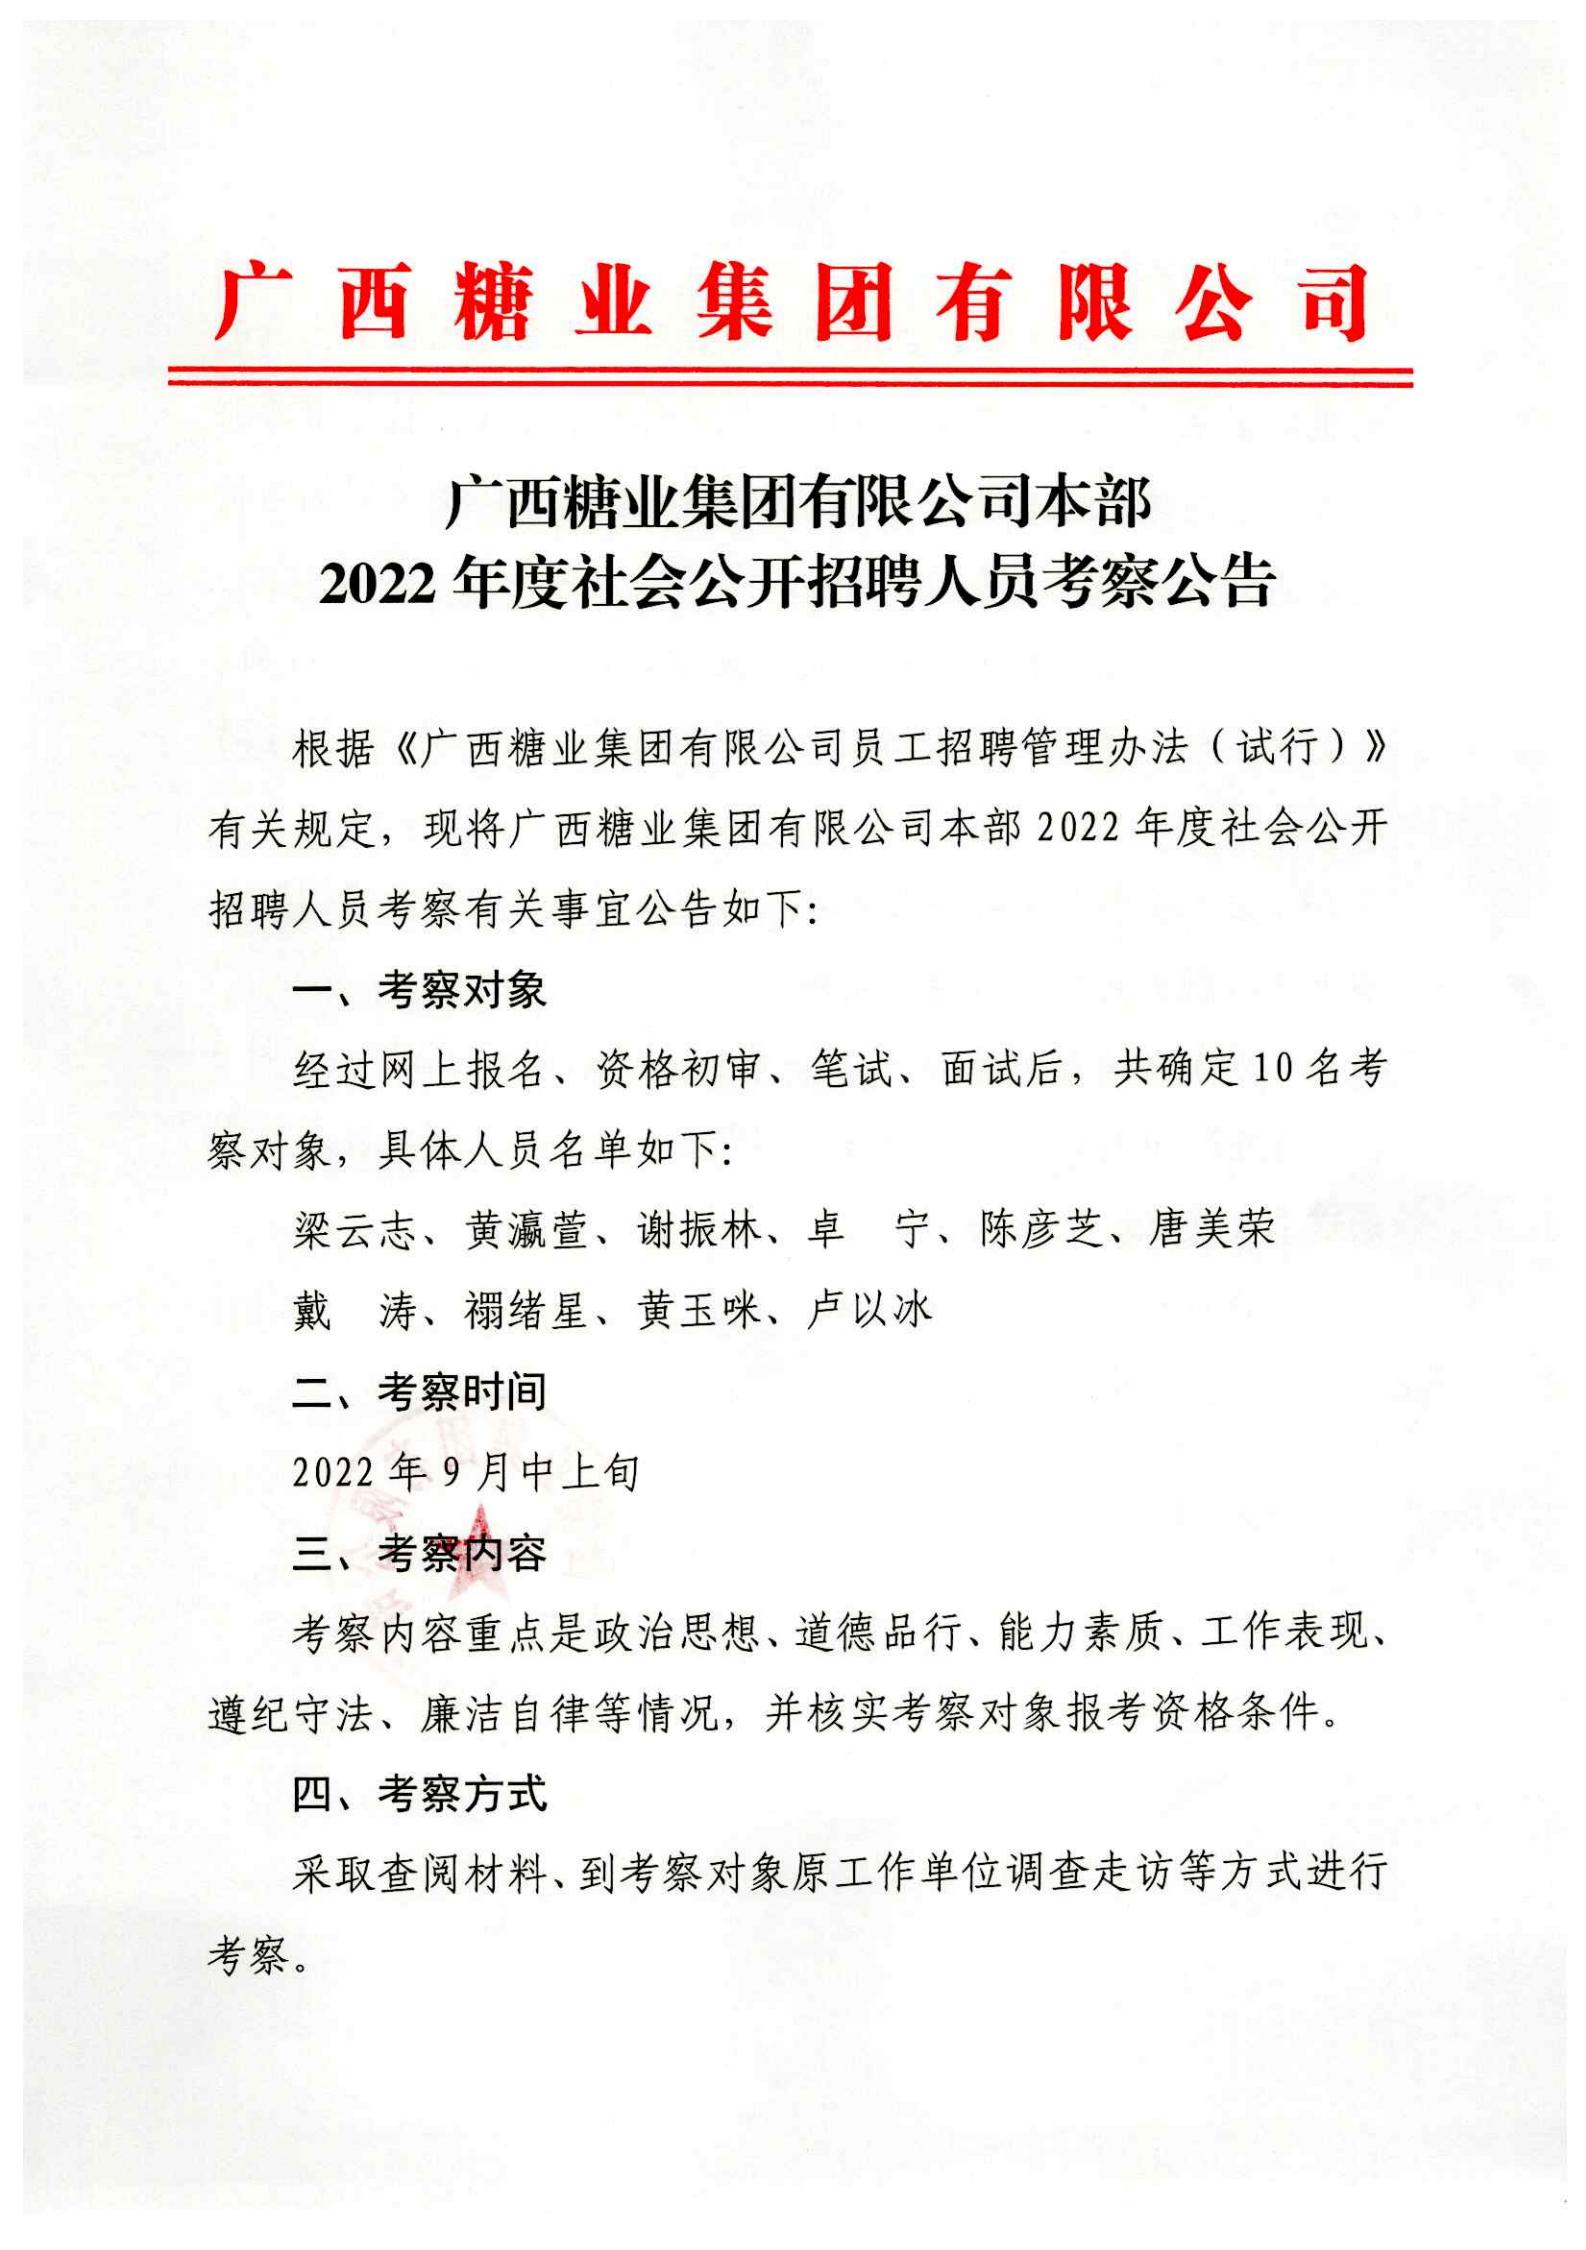 江南平台(中国)有限公司有限公司本部2022年度社会公开招聘人员考察公告_00.jpg